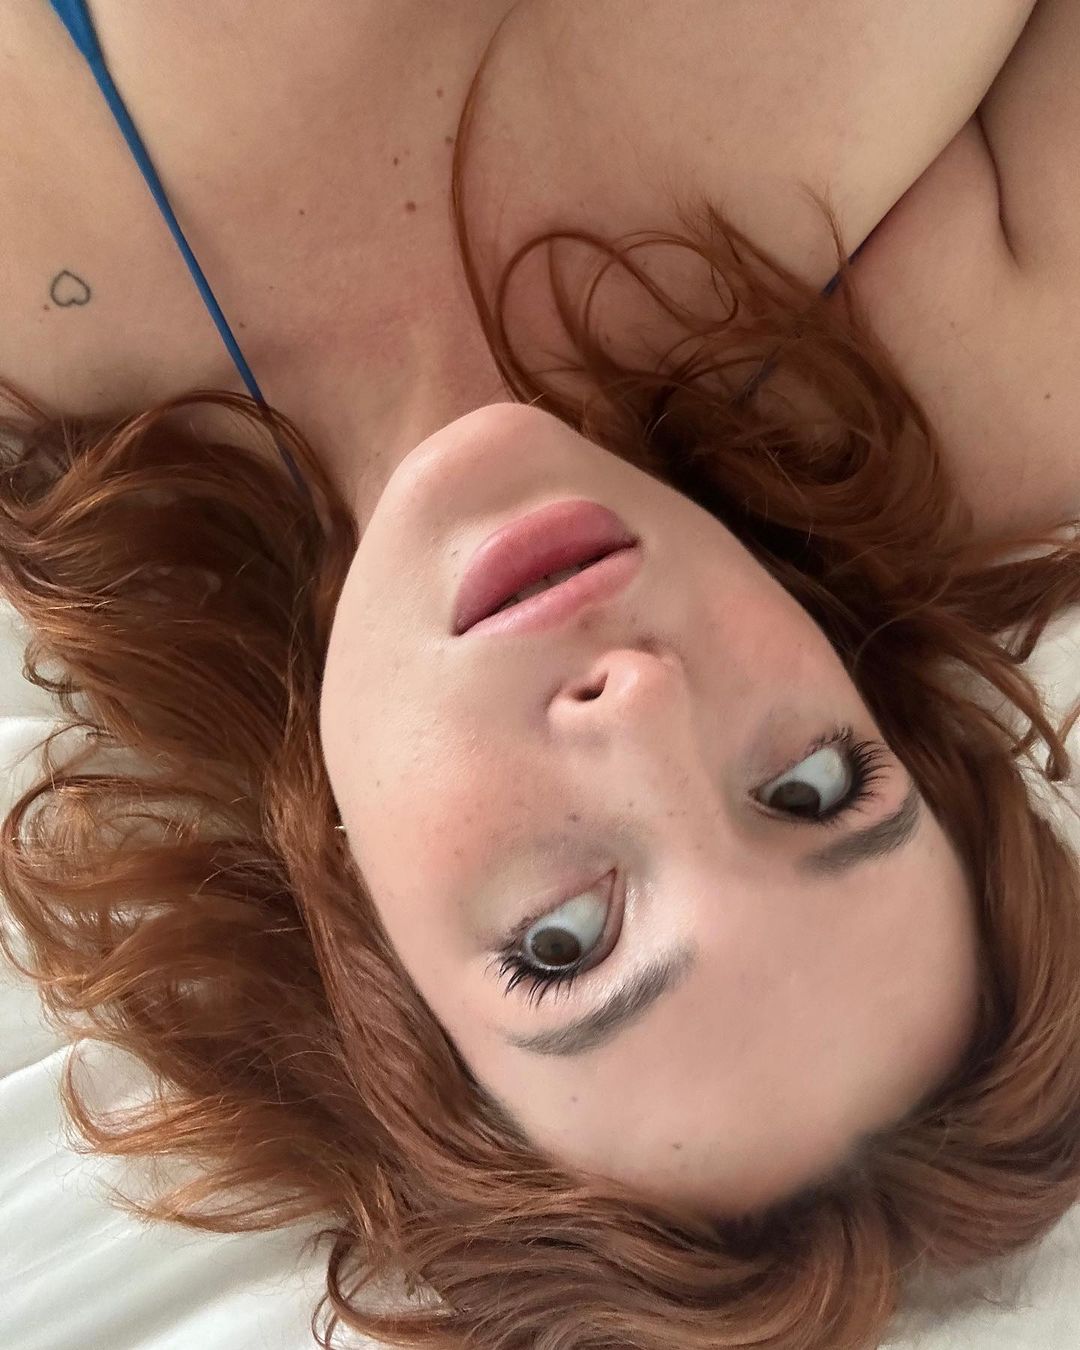 Photos n°2 : Bella Thorne’s Bedroom Selfies!